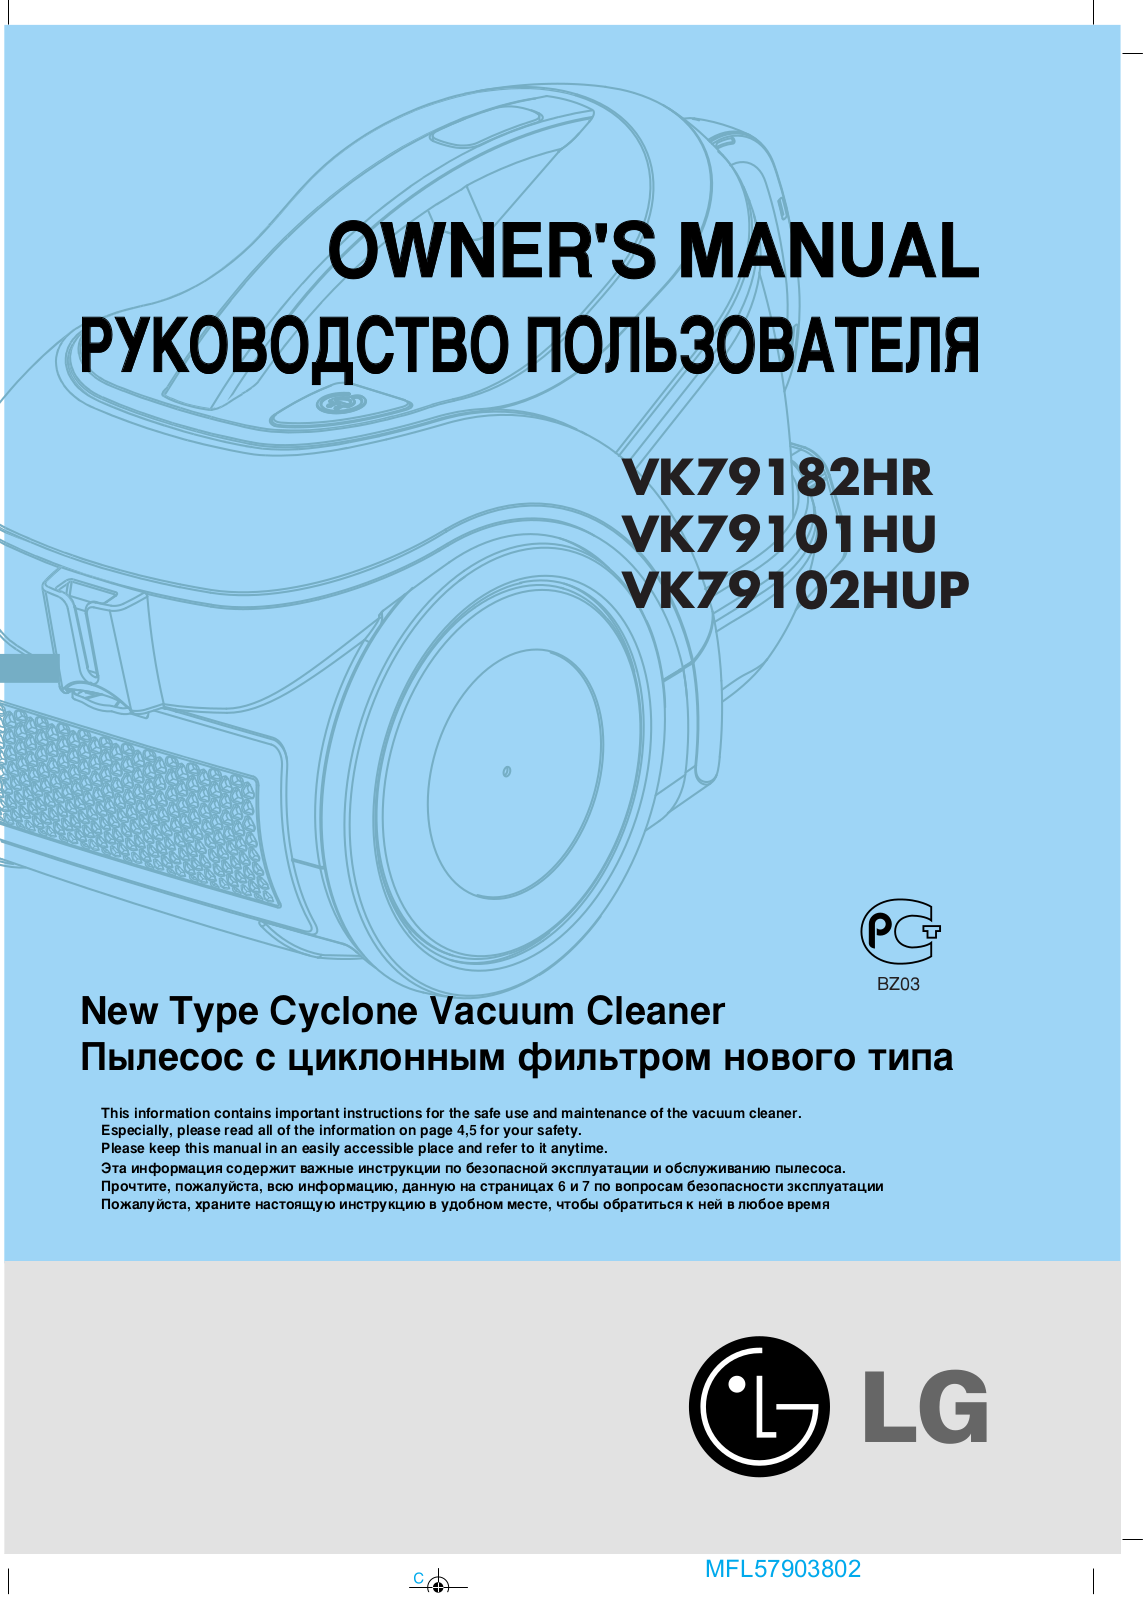 LG V-C7920HTR, V-C7920HUQM, V-K78182RQ, V-K79101HU, V-K79182HR User Manual